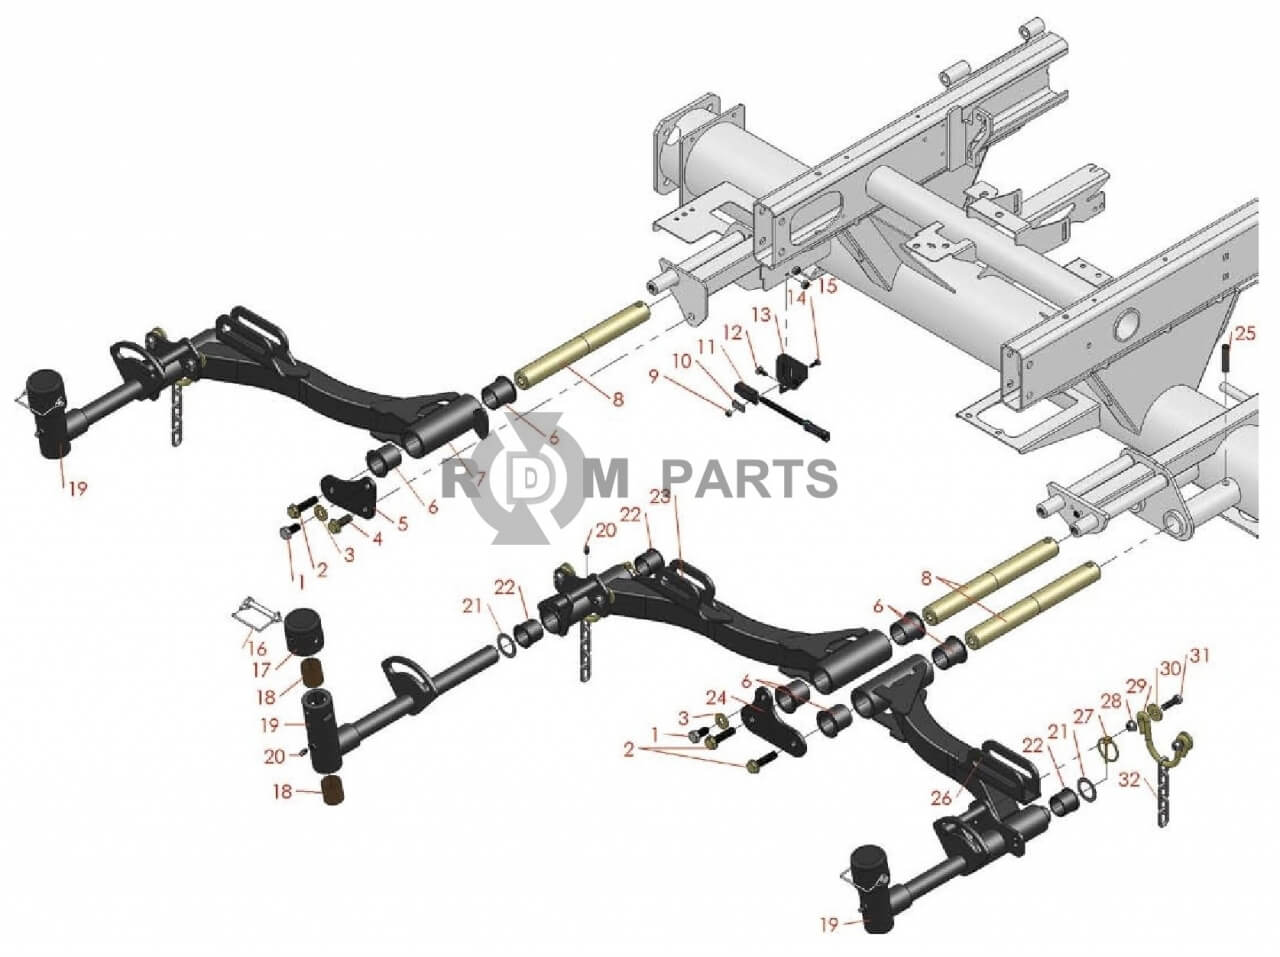 Replacement parts for RM 5210D 5410D 5510D 5610D Front lift arms